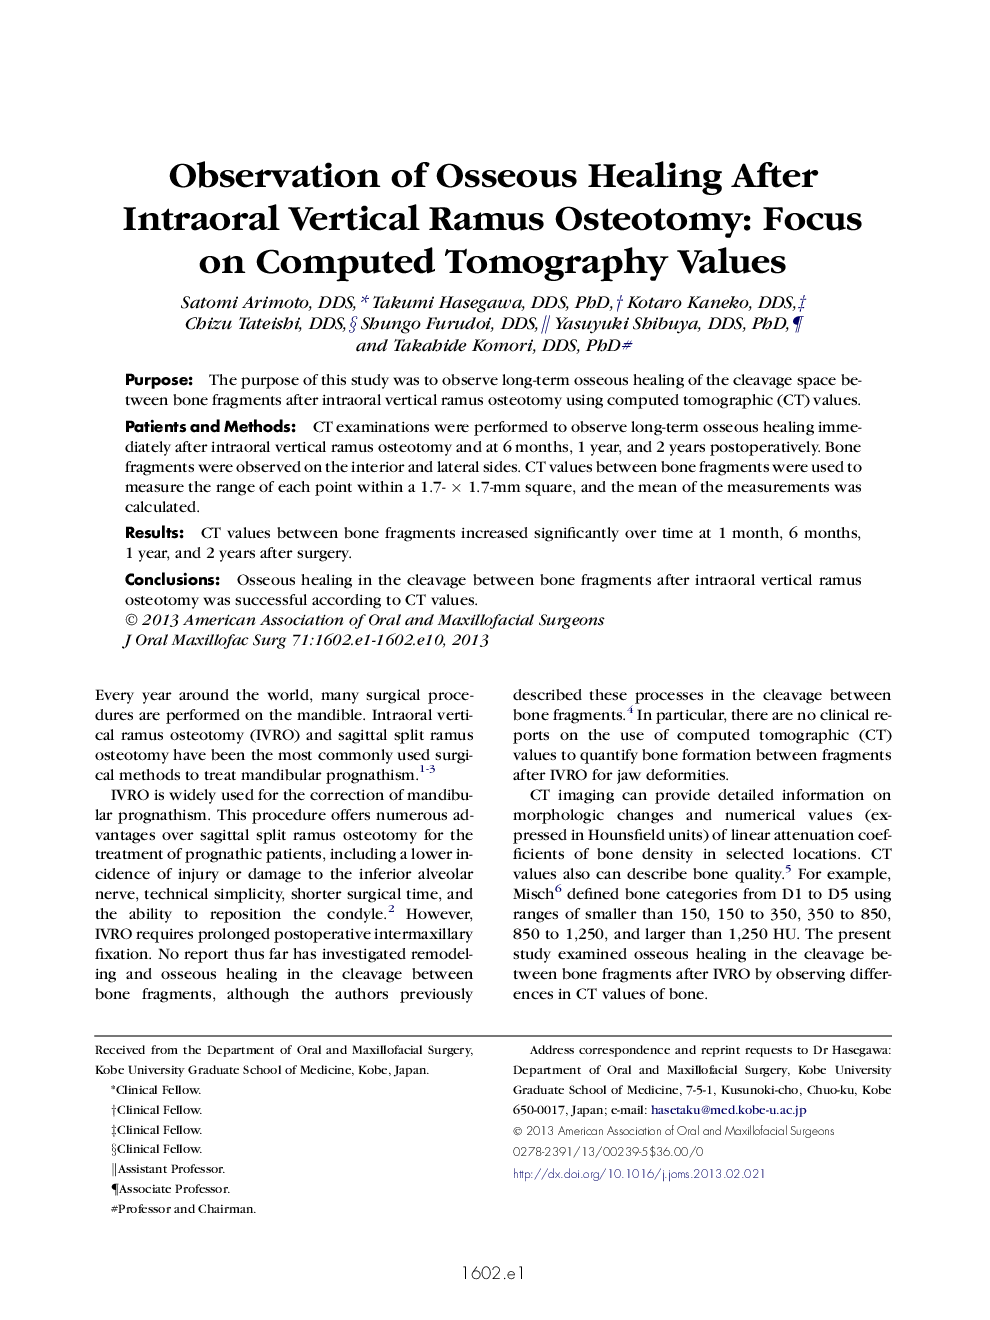 بررسی شایع پوکی استخوان پس از استئوتومی راموس عمودی عمودی: تمرکز بر ارزش های توموگرافی کامپیوتری 